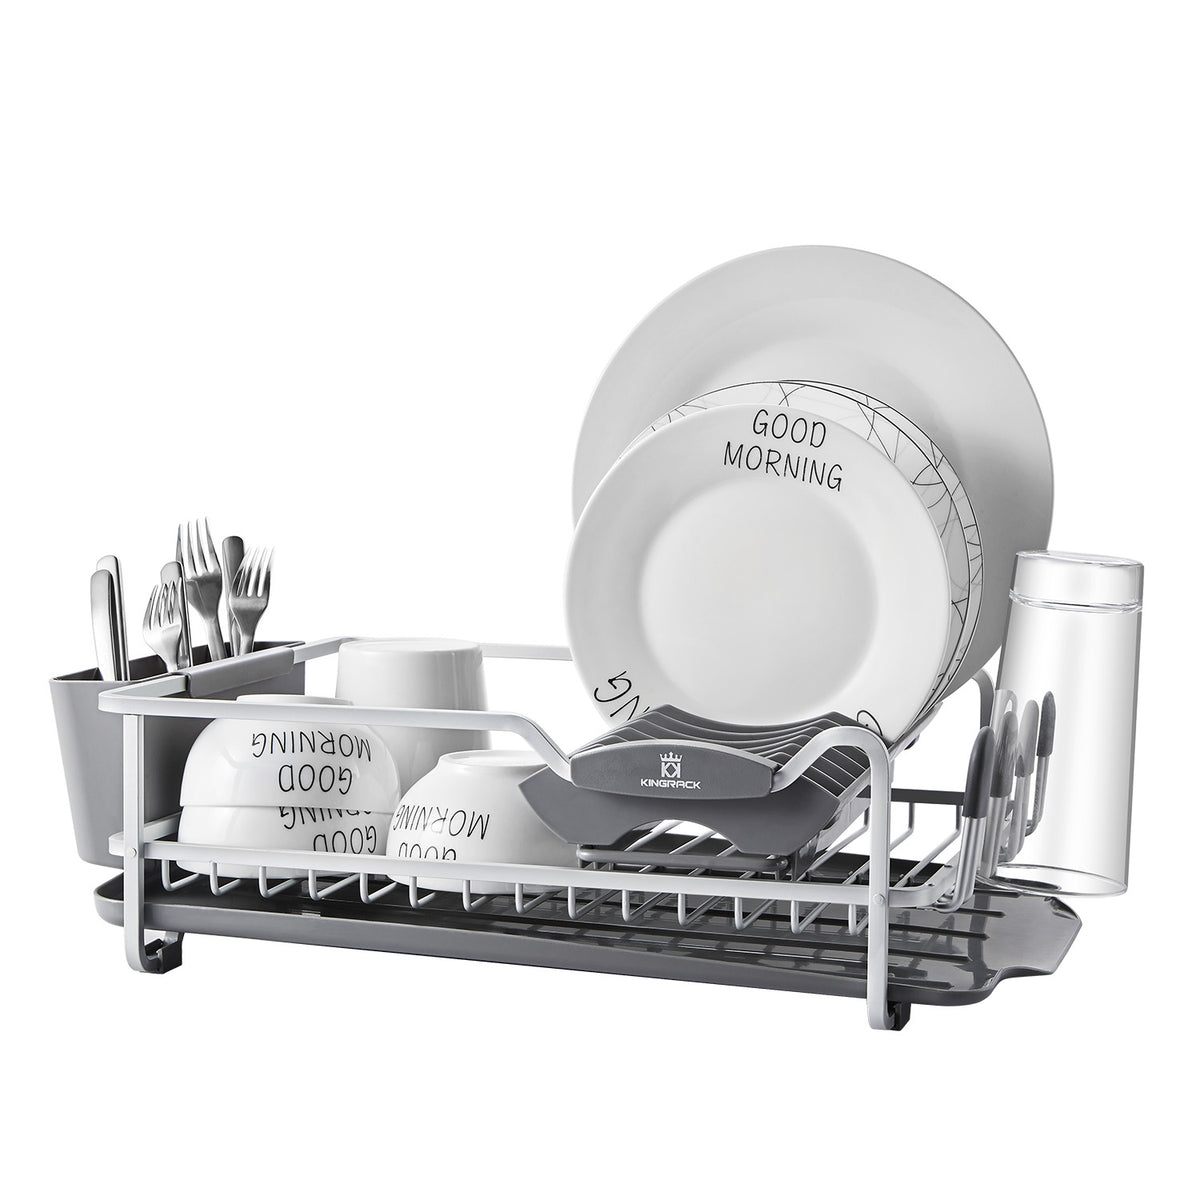 KINGRACK Aluminum Dish Drying Rack,Large Dish Rack and Drain Board  Set,Kitchen Dish Rack